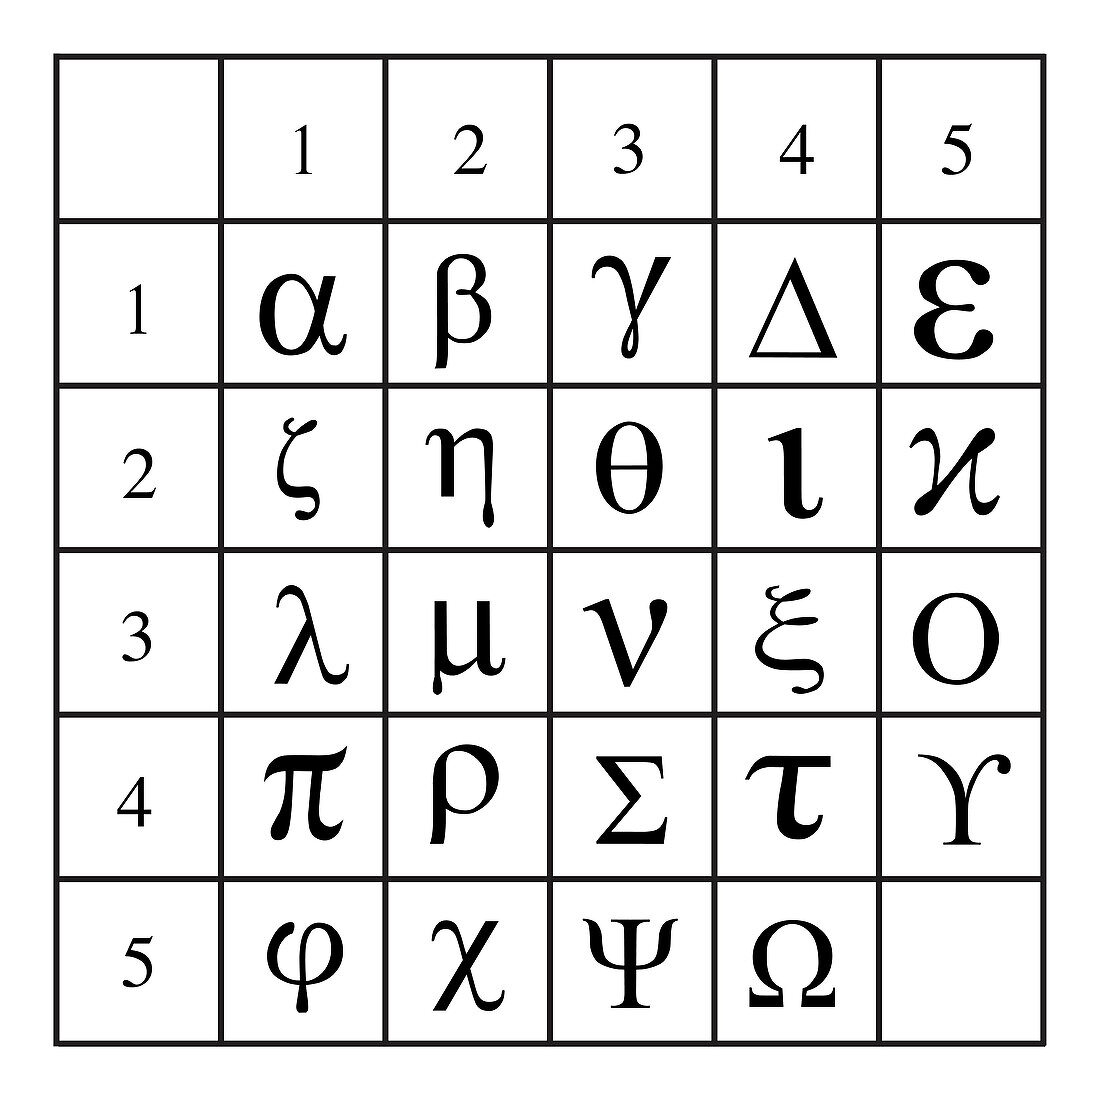 Polybius squares for encryption, illustration